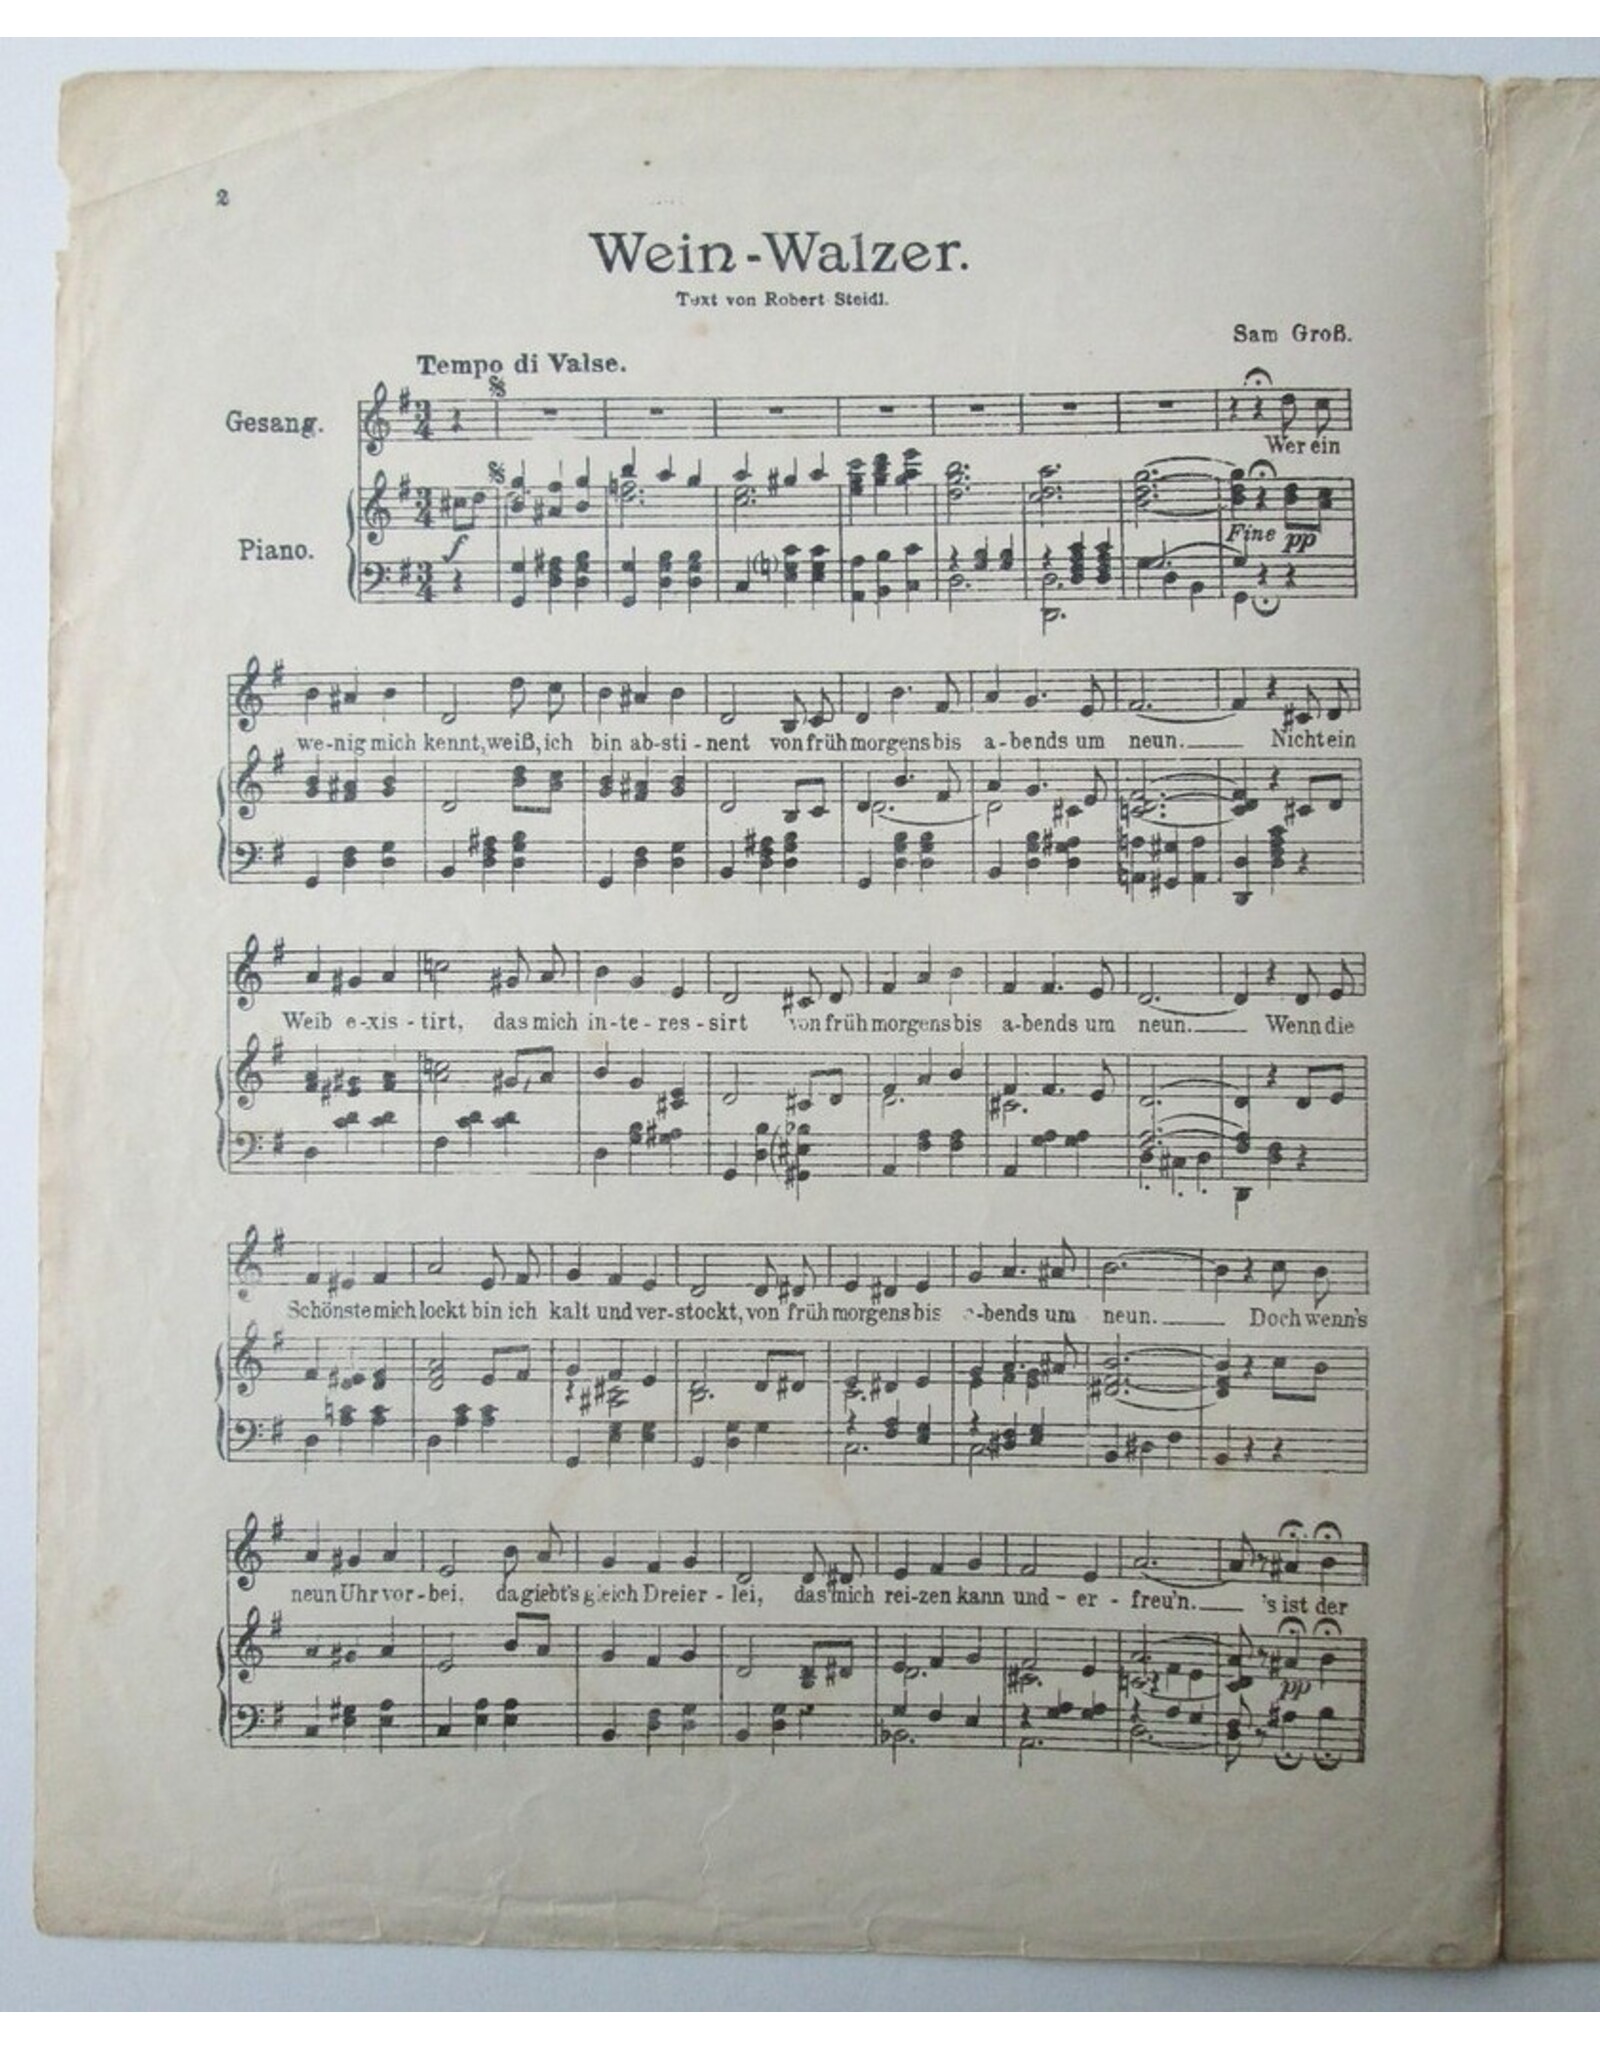 Sam Gross - Wein-Walzer: für eine Singstimme mit Klavierbegleitung. Text von Robert Steidl. Musik von Sam Gross